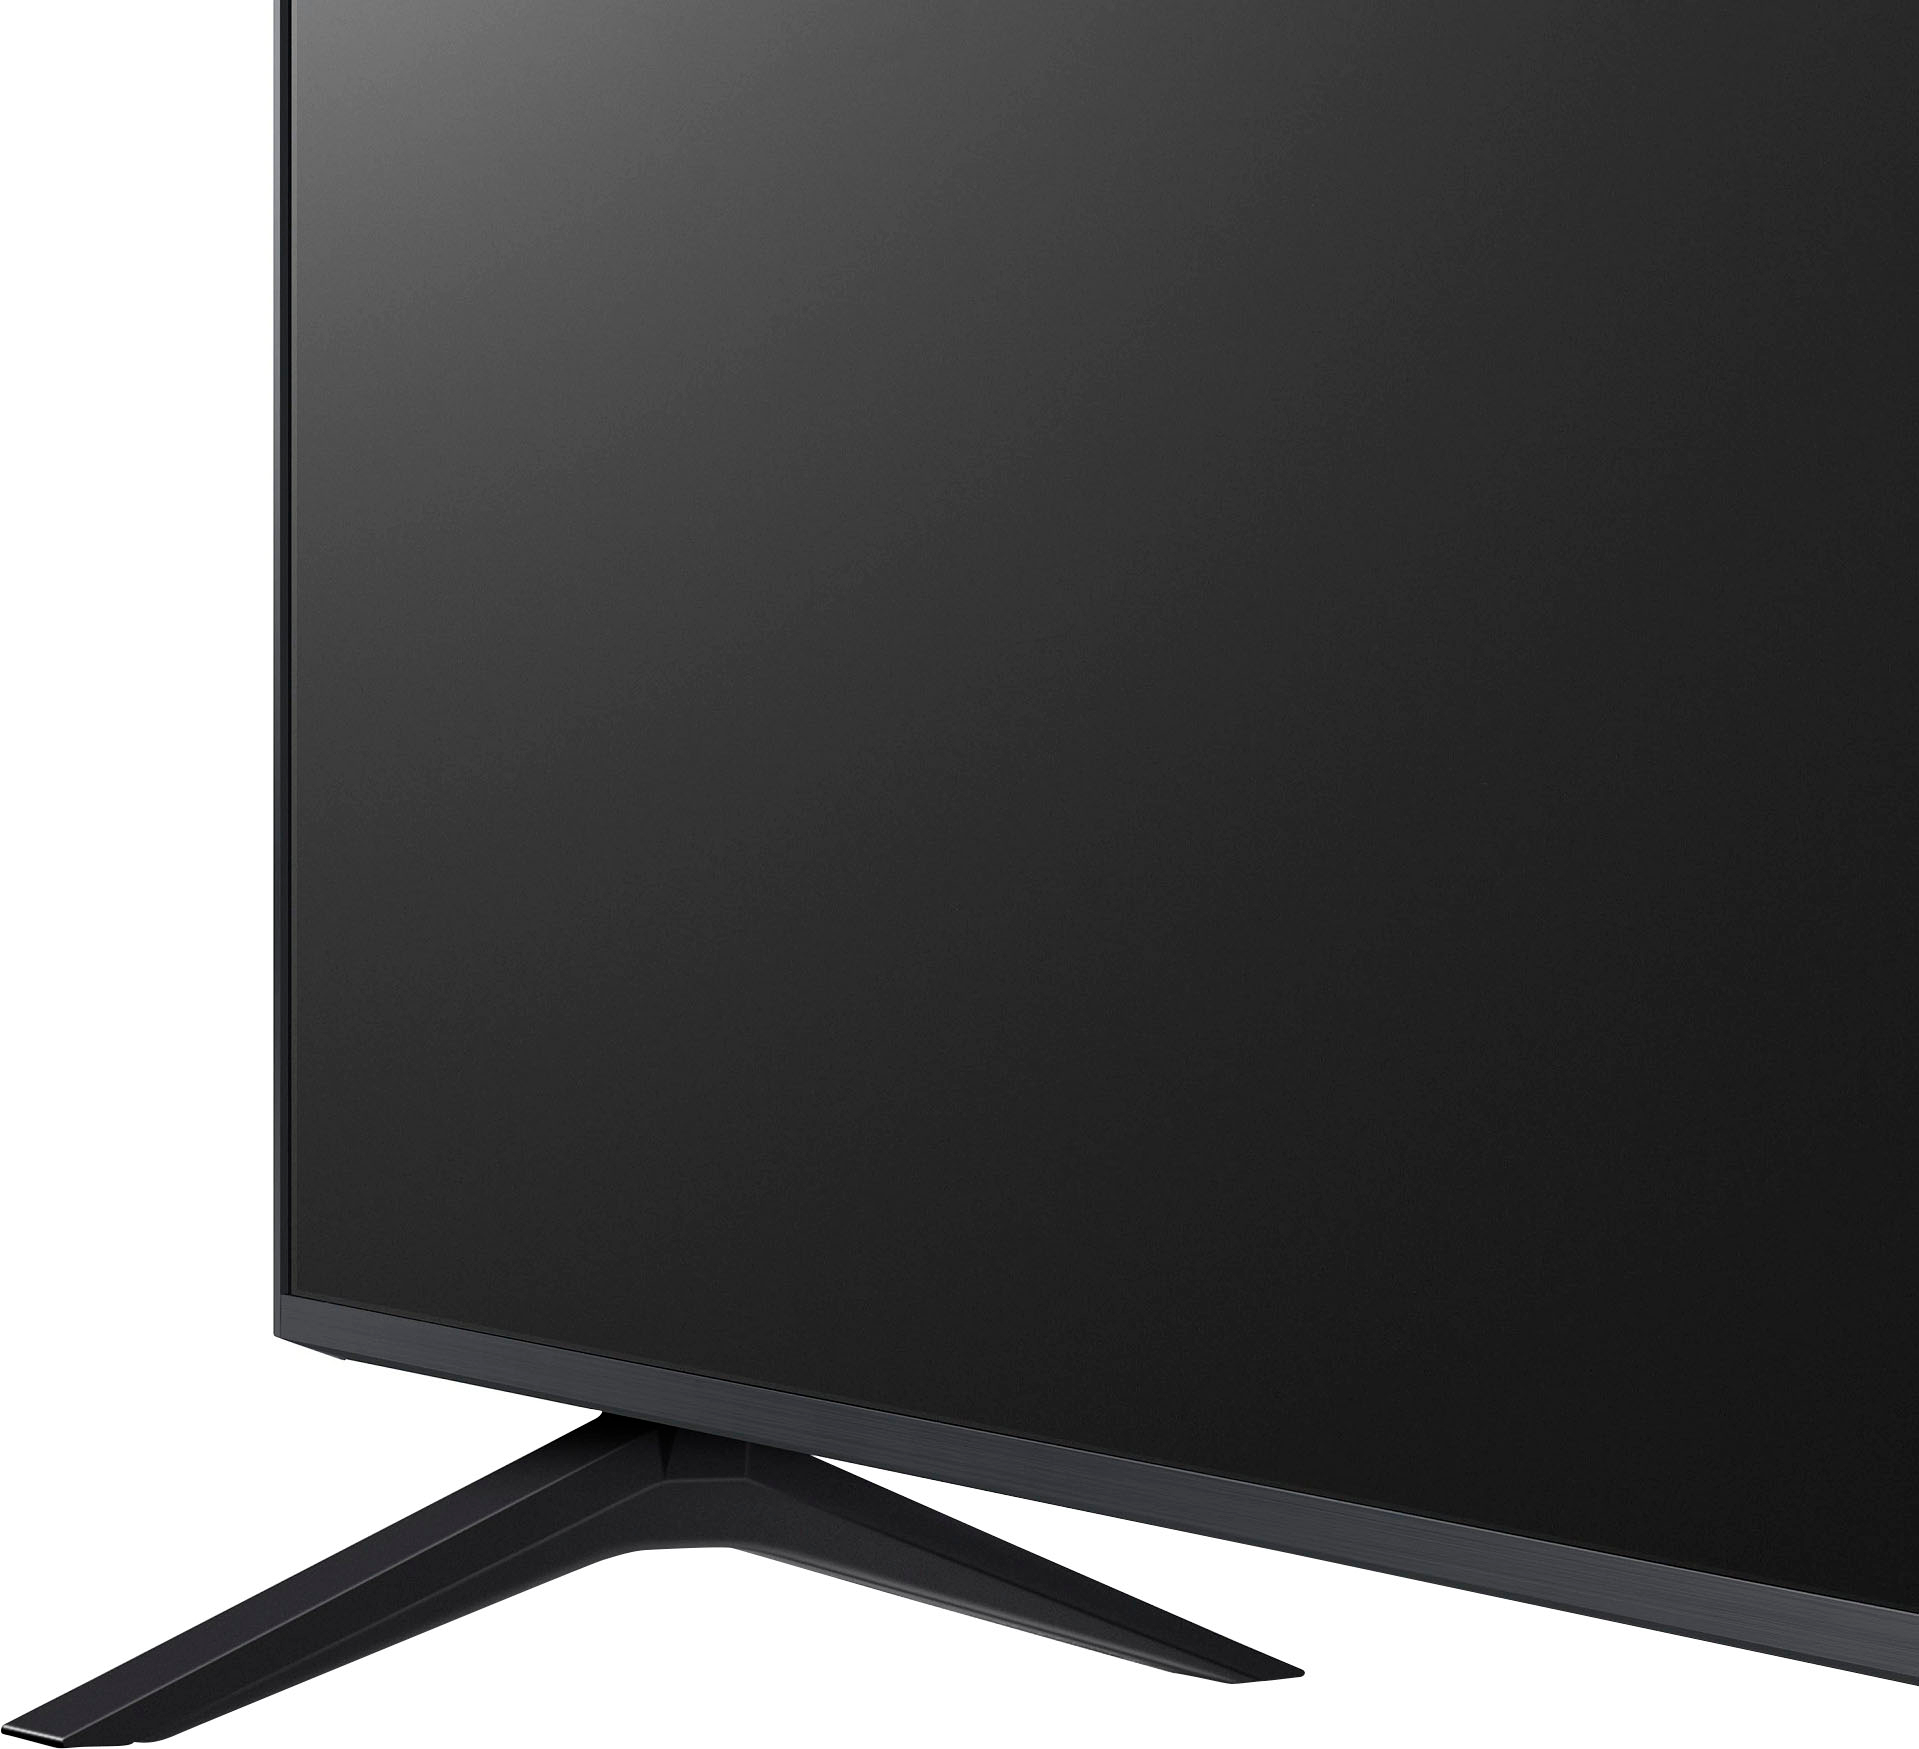 TELEVISORES LG 75UR7800PSB 75 PULGADAS SMART TV 4K UHD  HDMI/USB/WIFI/BLUETOOH/THINQ/WEBOS - Siglo 21